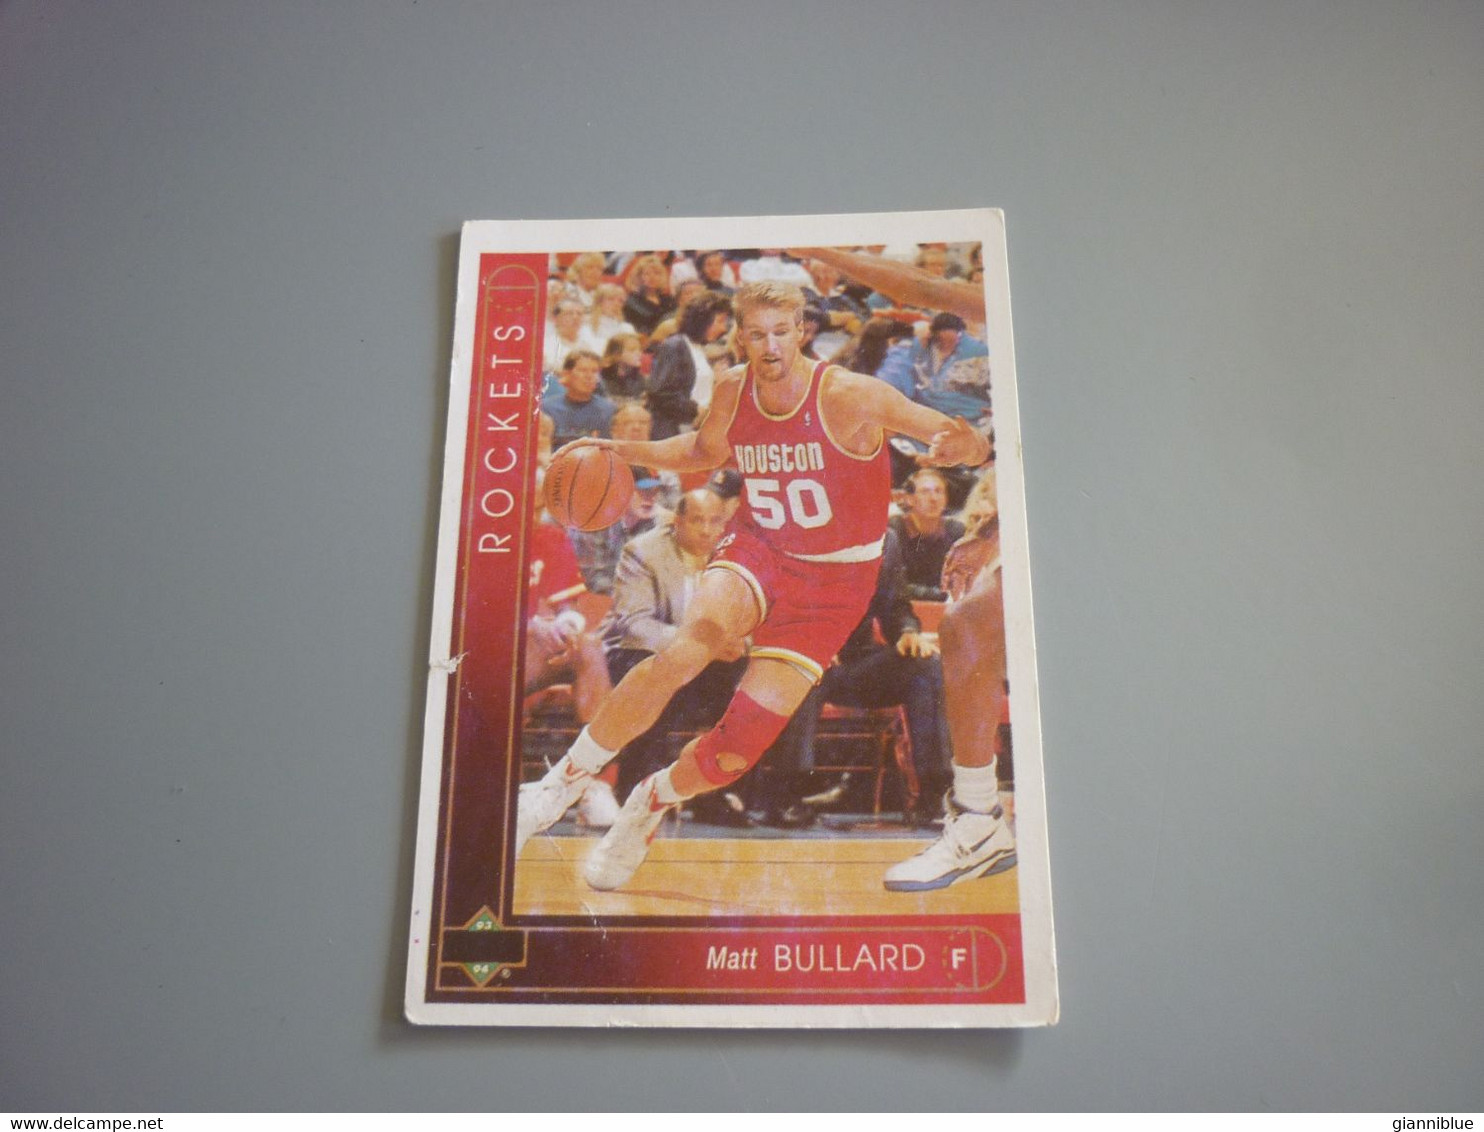 Matt Bullard Houston Rockets NBA Basketball '90s Rare Greek Edition Card - 1990-1999